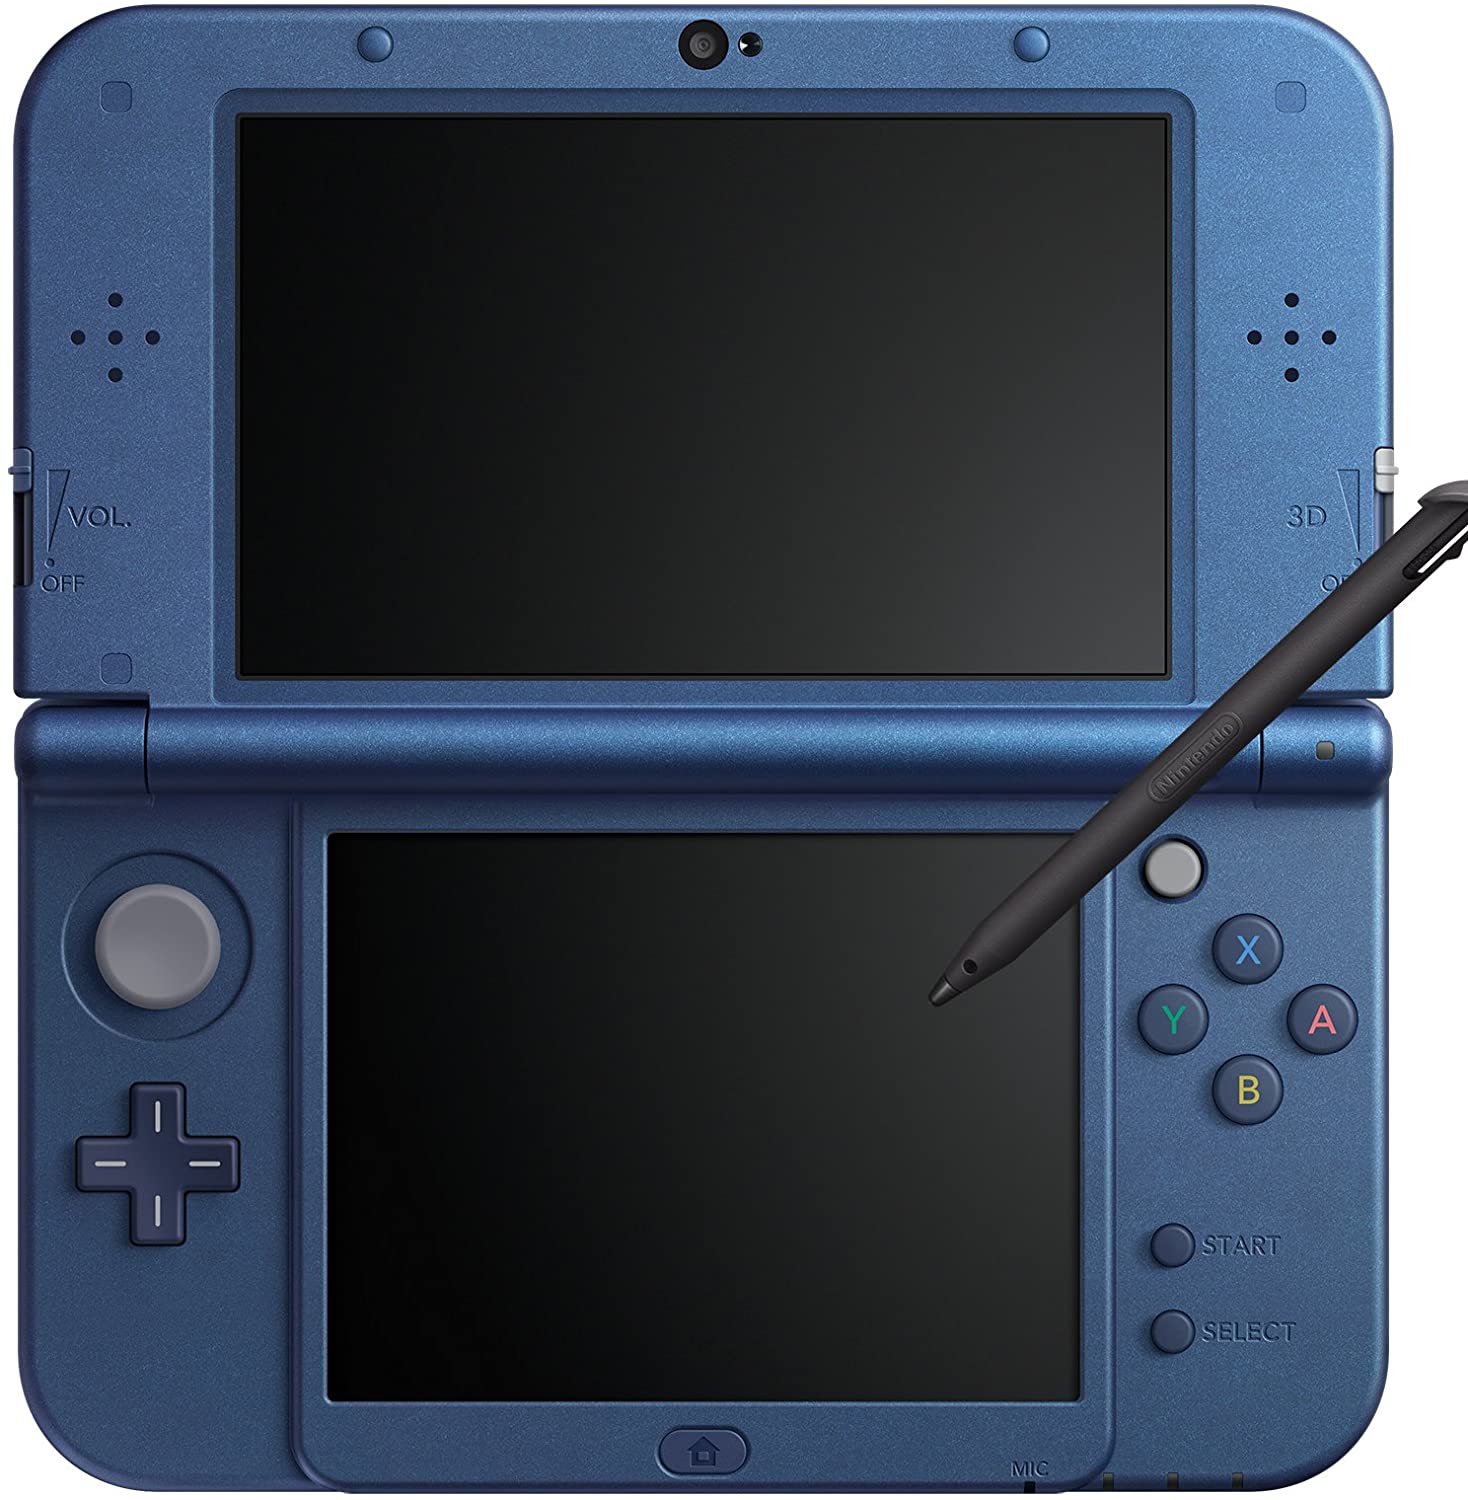 中古 New Ll 3ds Nintendo ニュー ニンテンドー 本体 メタリックブルー Blue 青 任天堂 Ds 通販 外箱 付属品完備 Facul Ao